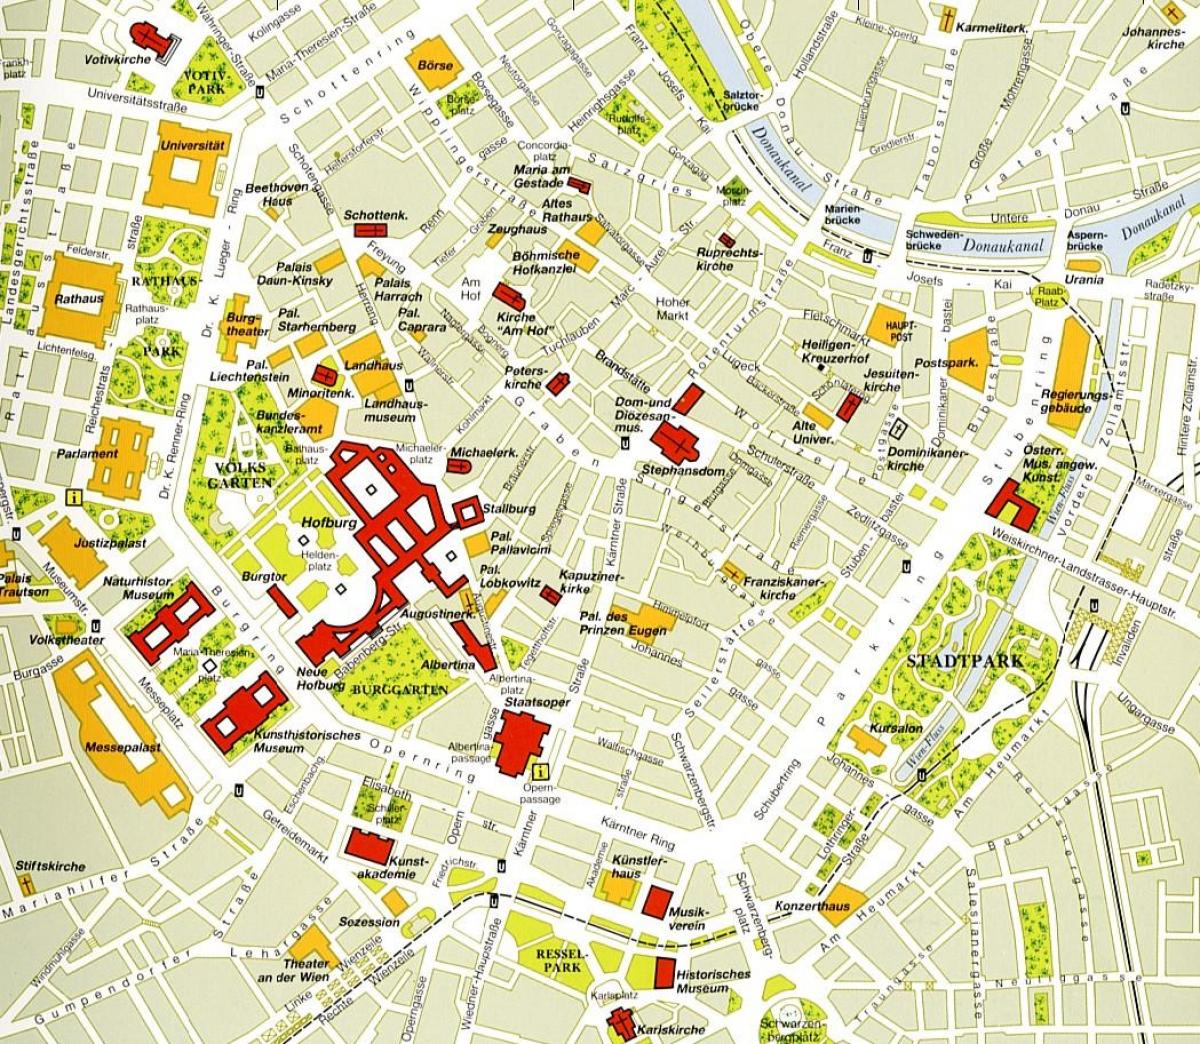 Vienna center map